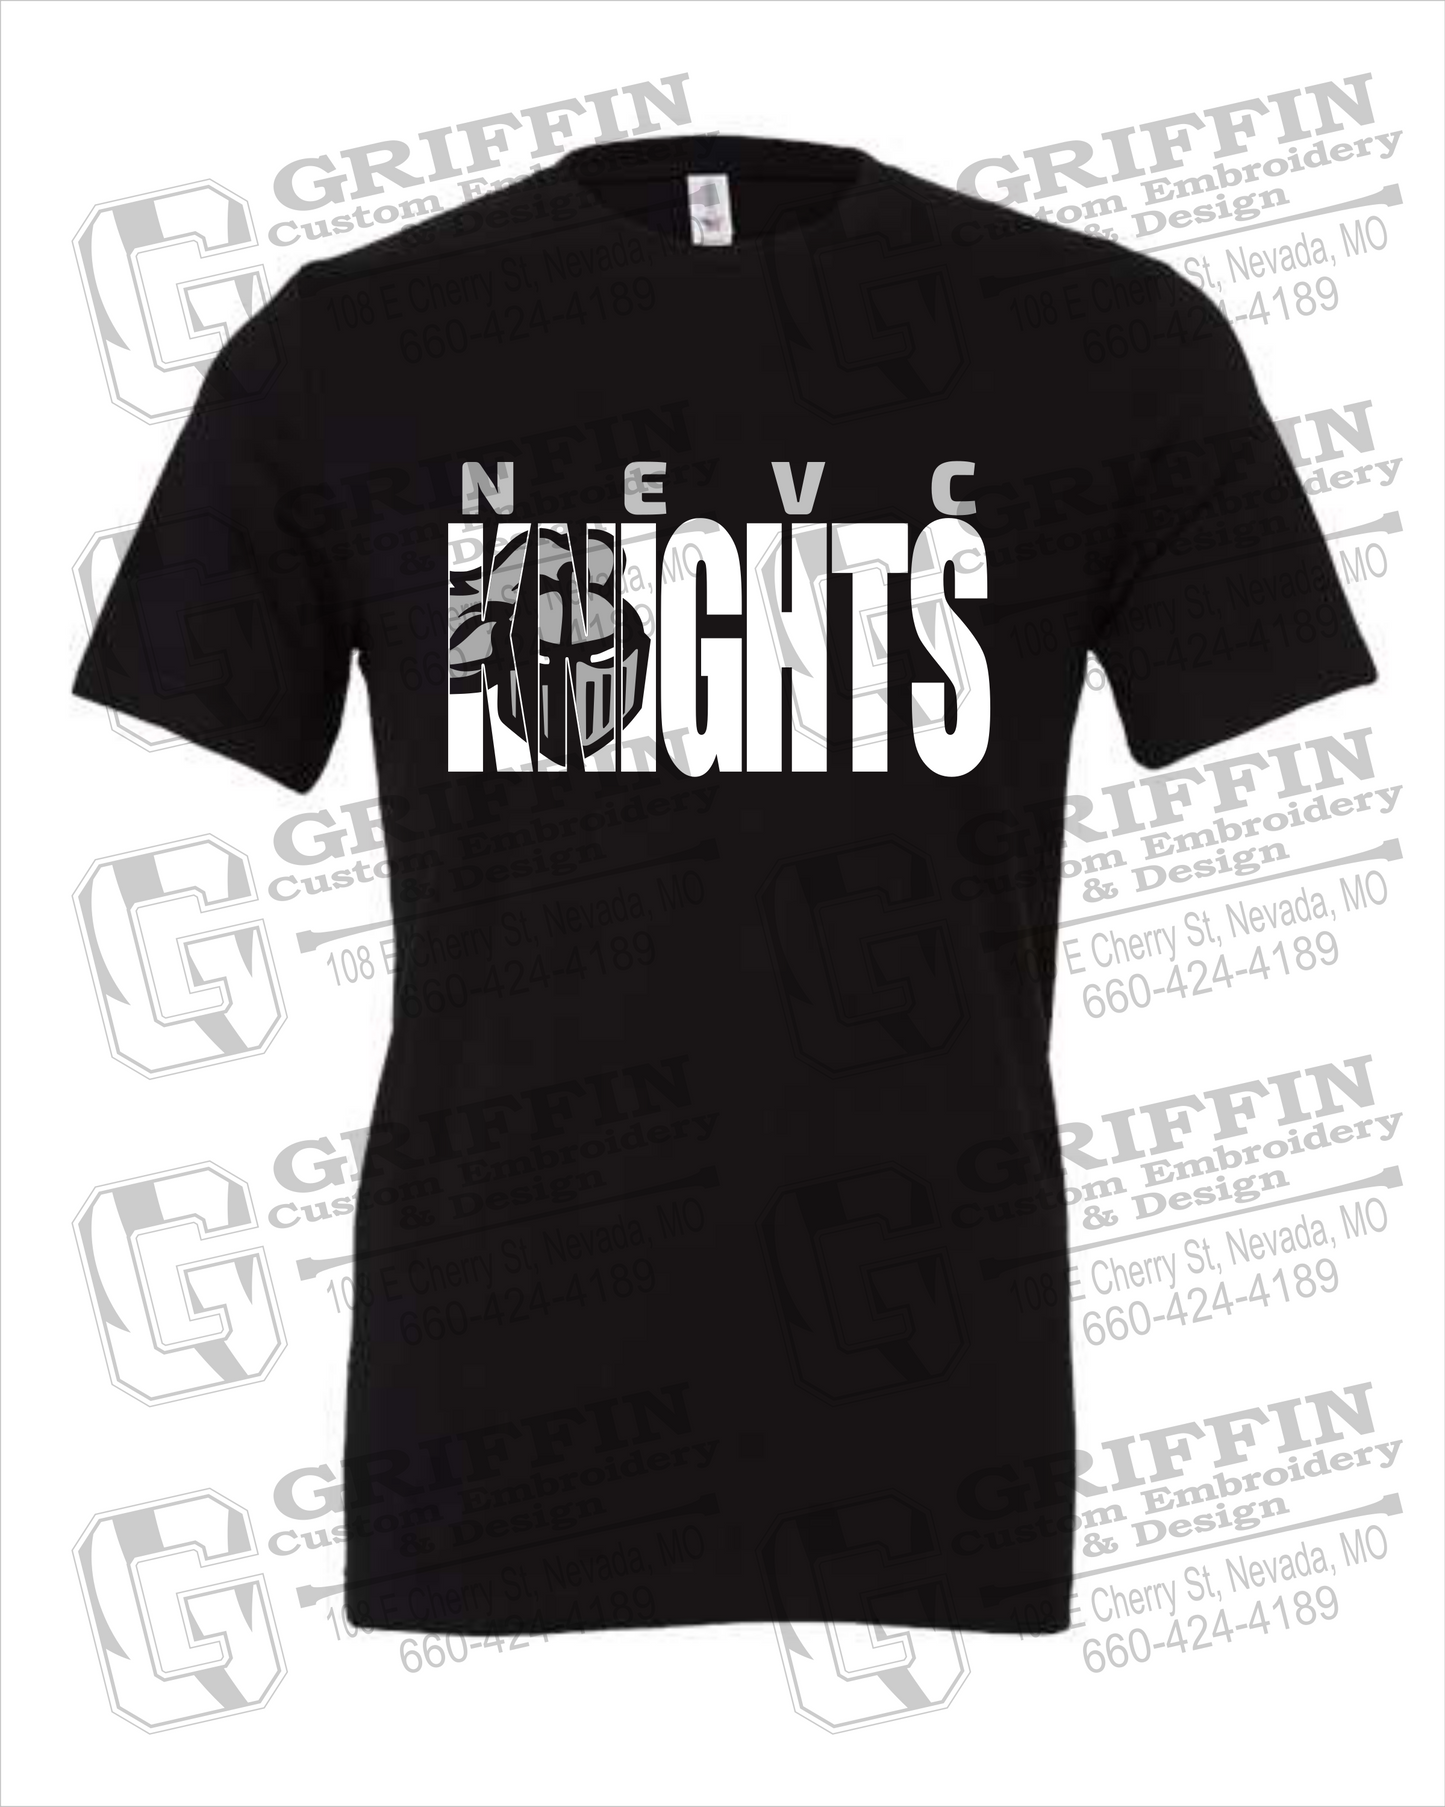 NEVC Knights 23-B 100% Cotton Short Sleeve T-Shirt